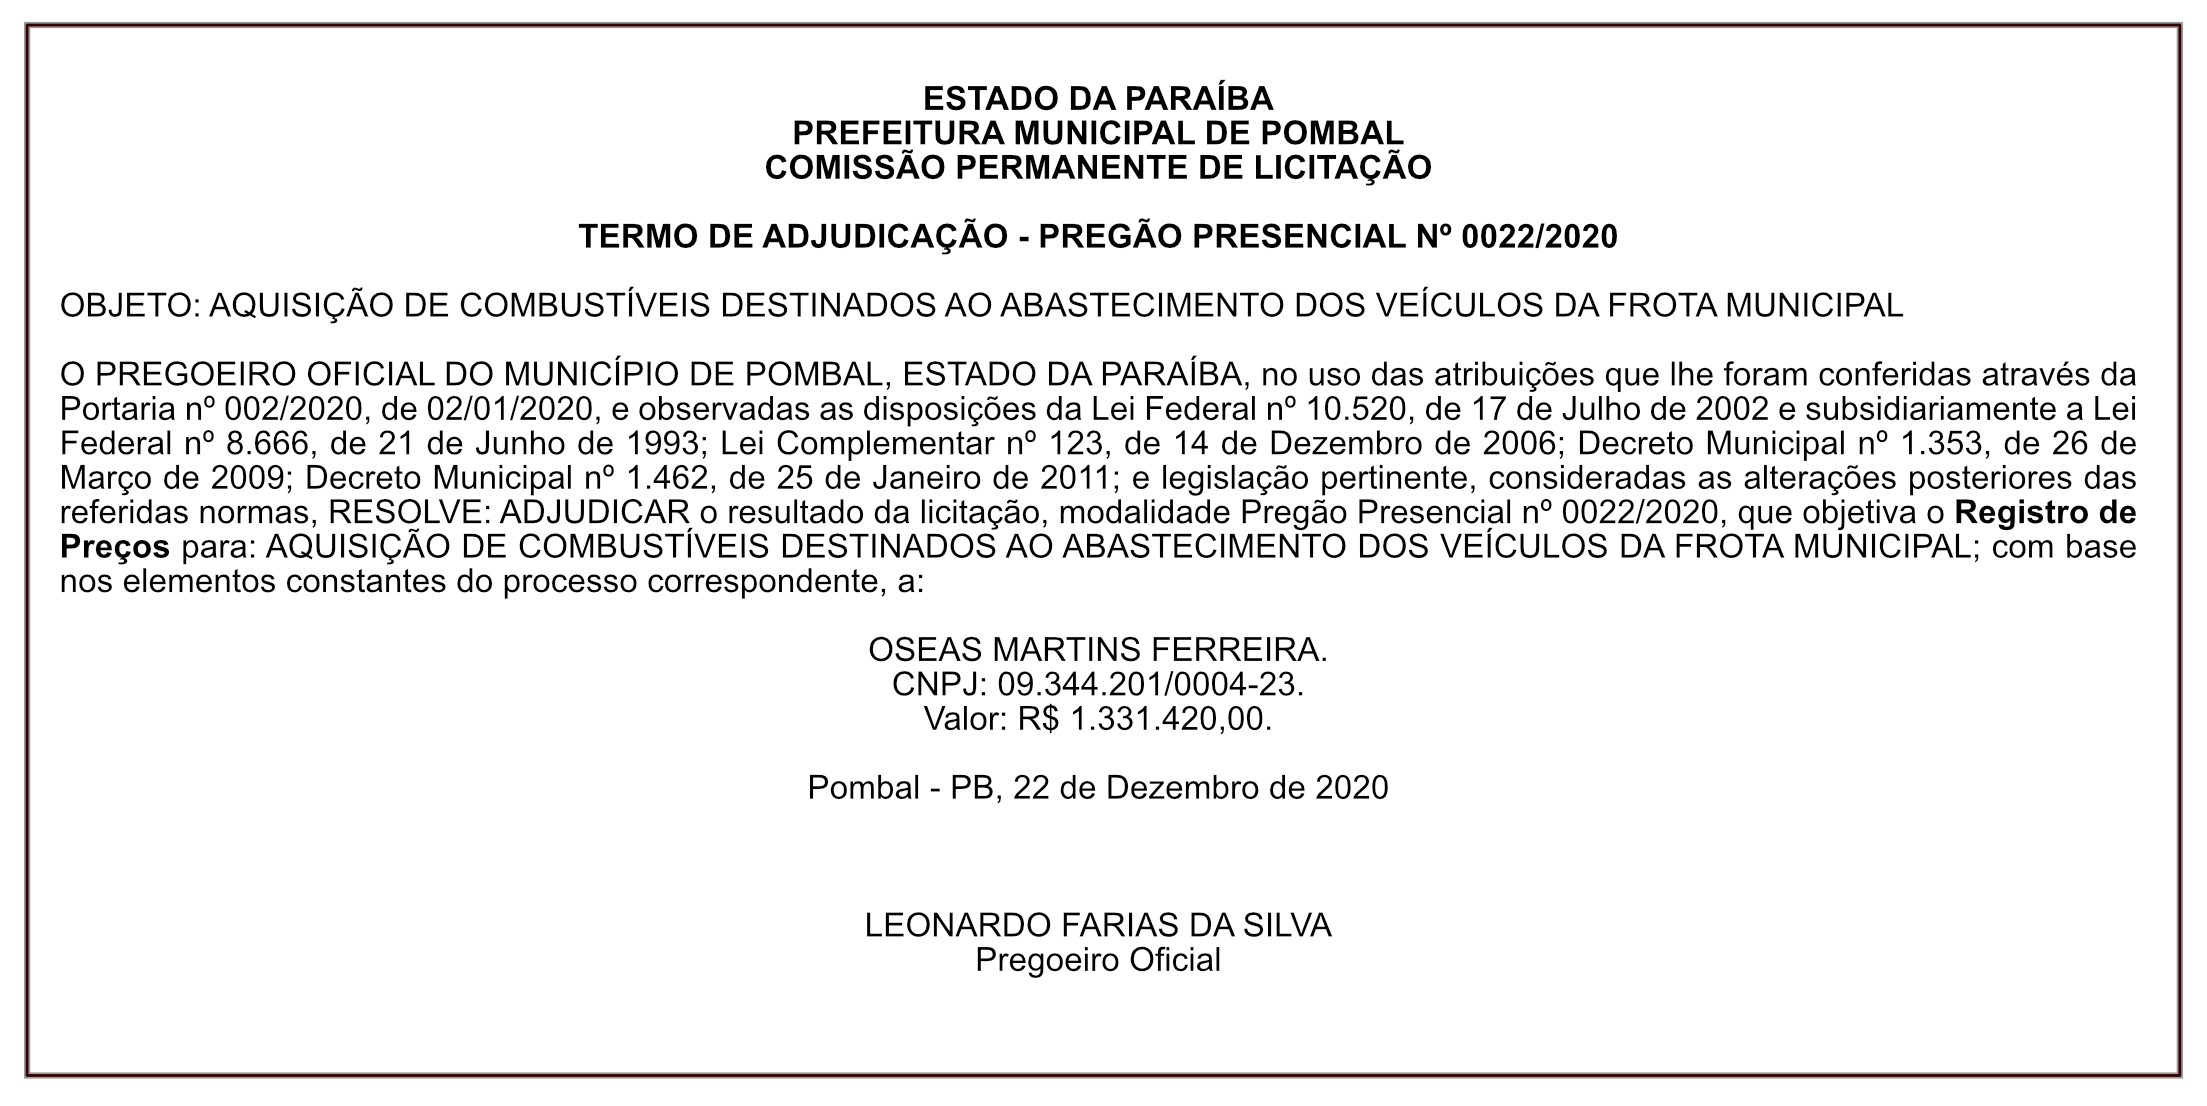 PREFEITURA MUNICIPAL DE POMBAL – TERMO DE ADJUDICAÇÃO – PREGÃO PRESENCIAL Nº 0022/2020